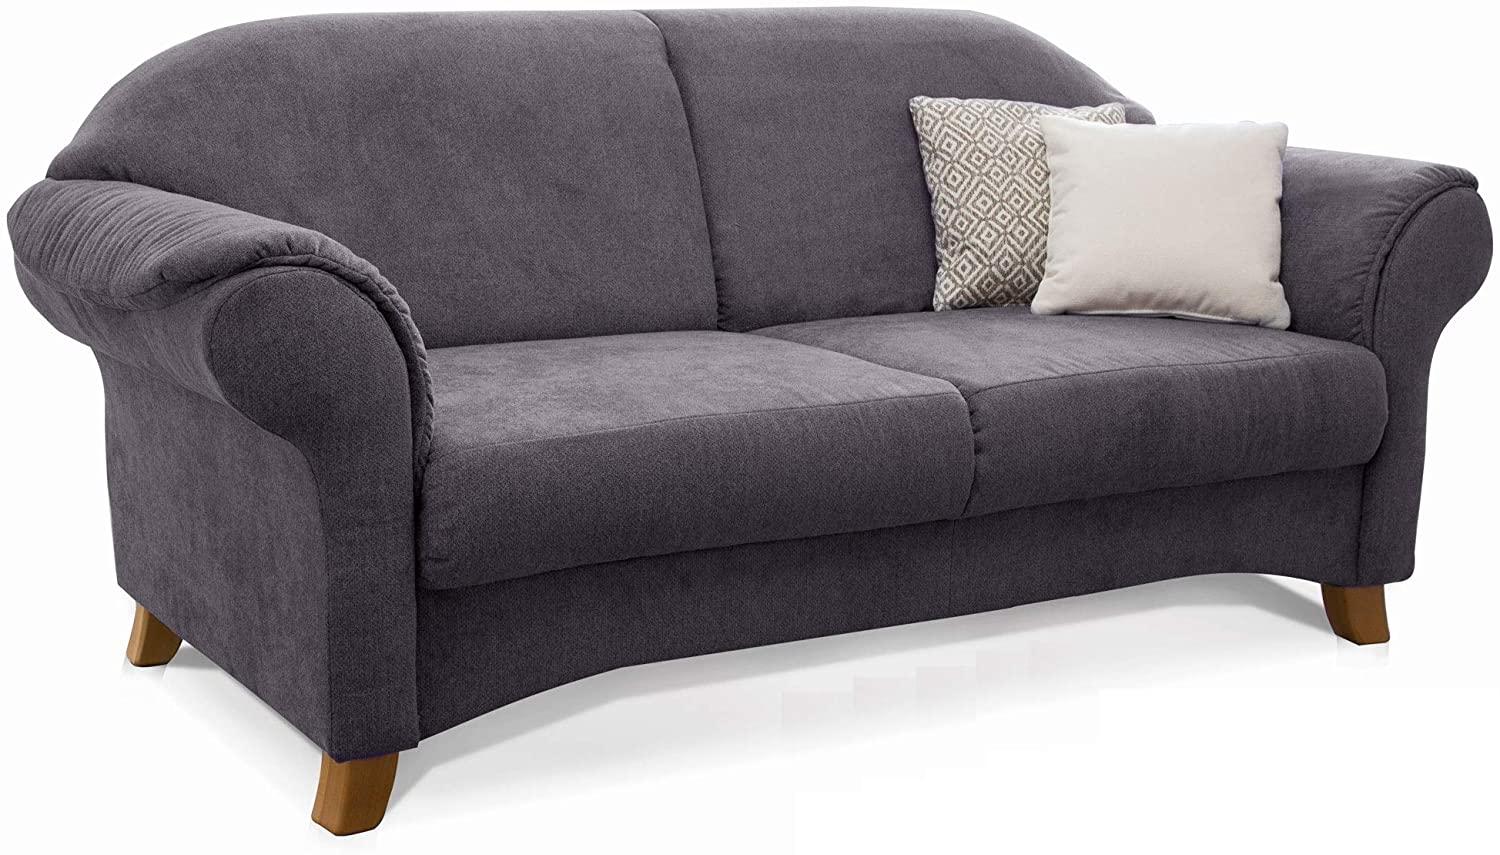 Cavadore 2-Sitzer Sofa Maifayr mit Federkern / Moderne 2-sitzige Couch im Landhausstil mit Holzfüßen / 164 x 90 x 90 / grau Bild 1